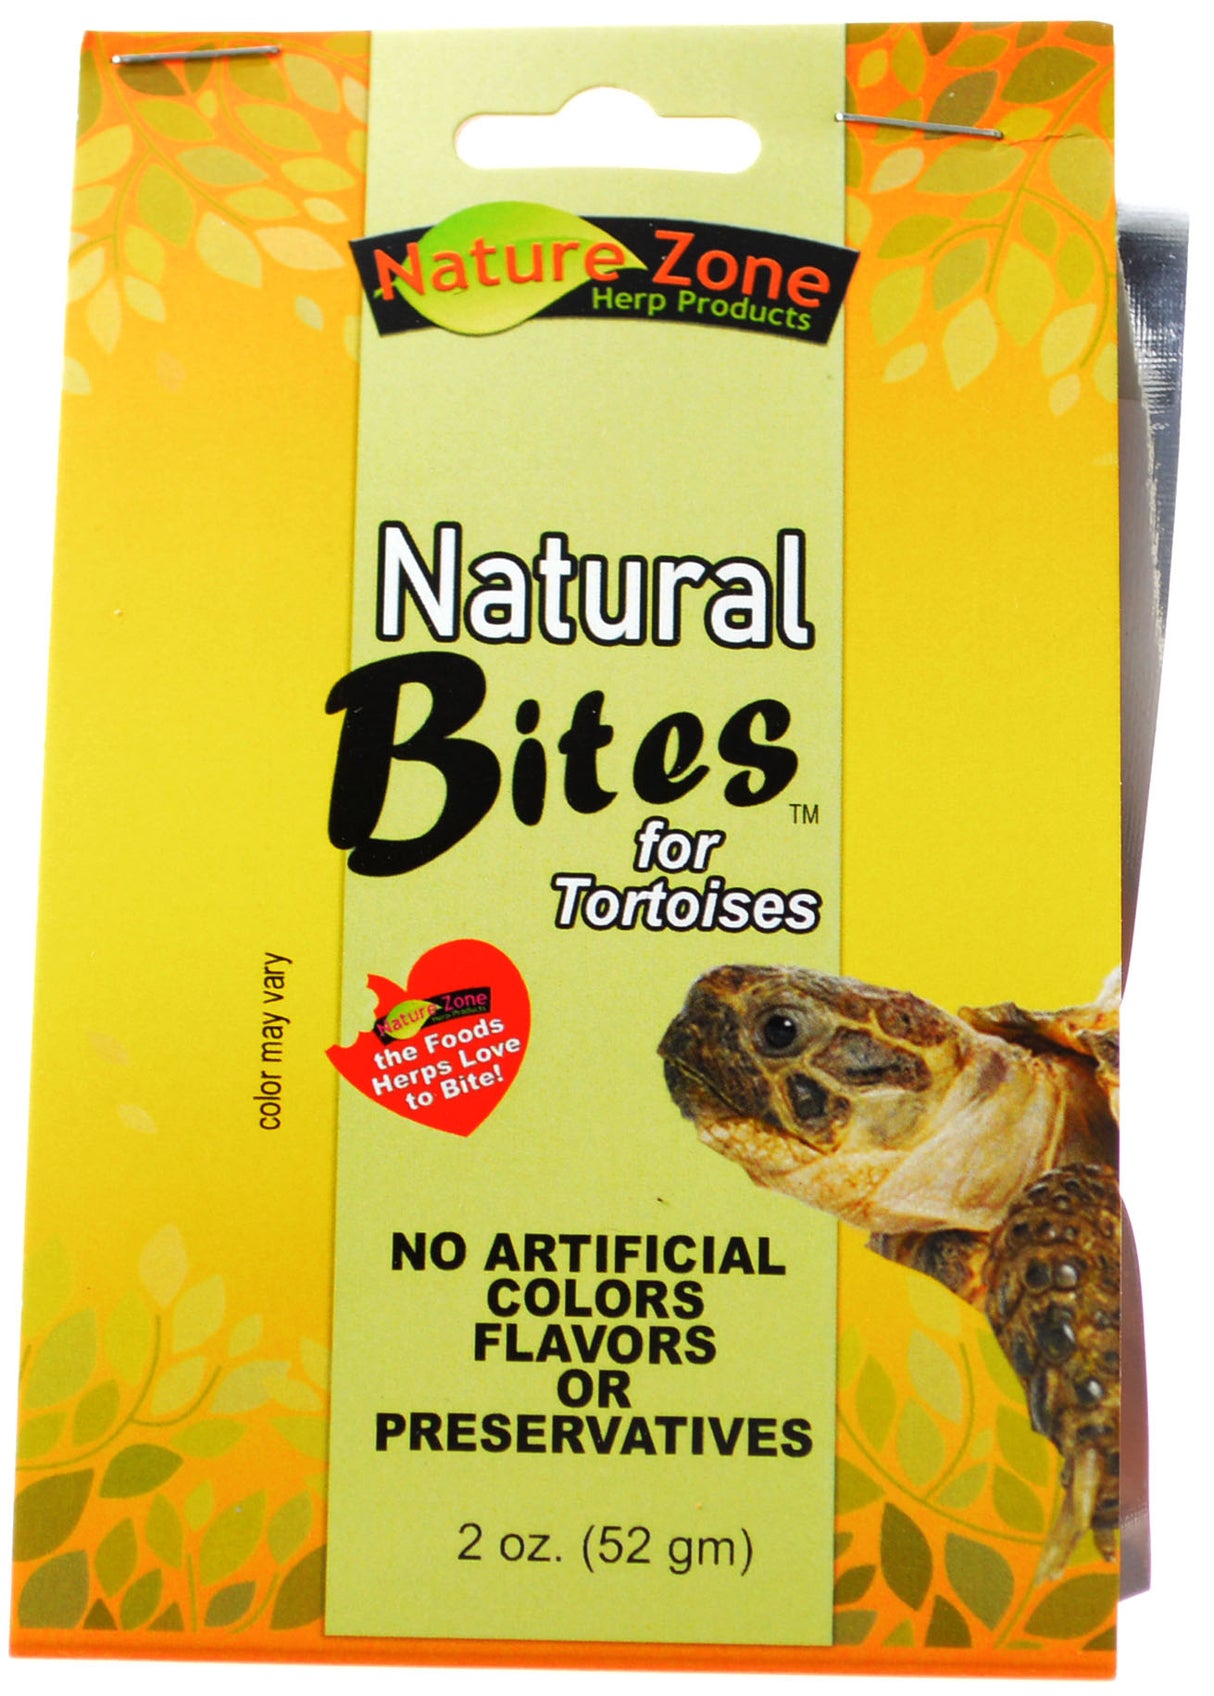 16 oz (8 x 2 oz) Nature Zone Natural Bites for Tortoises